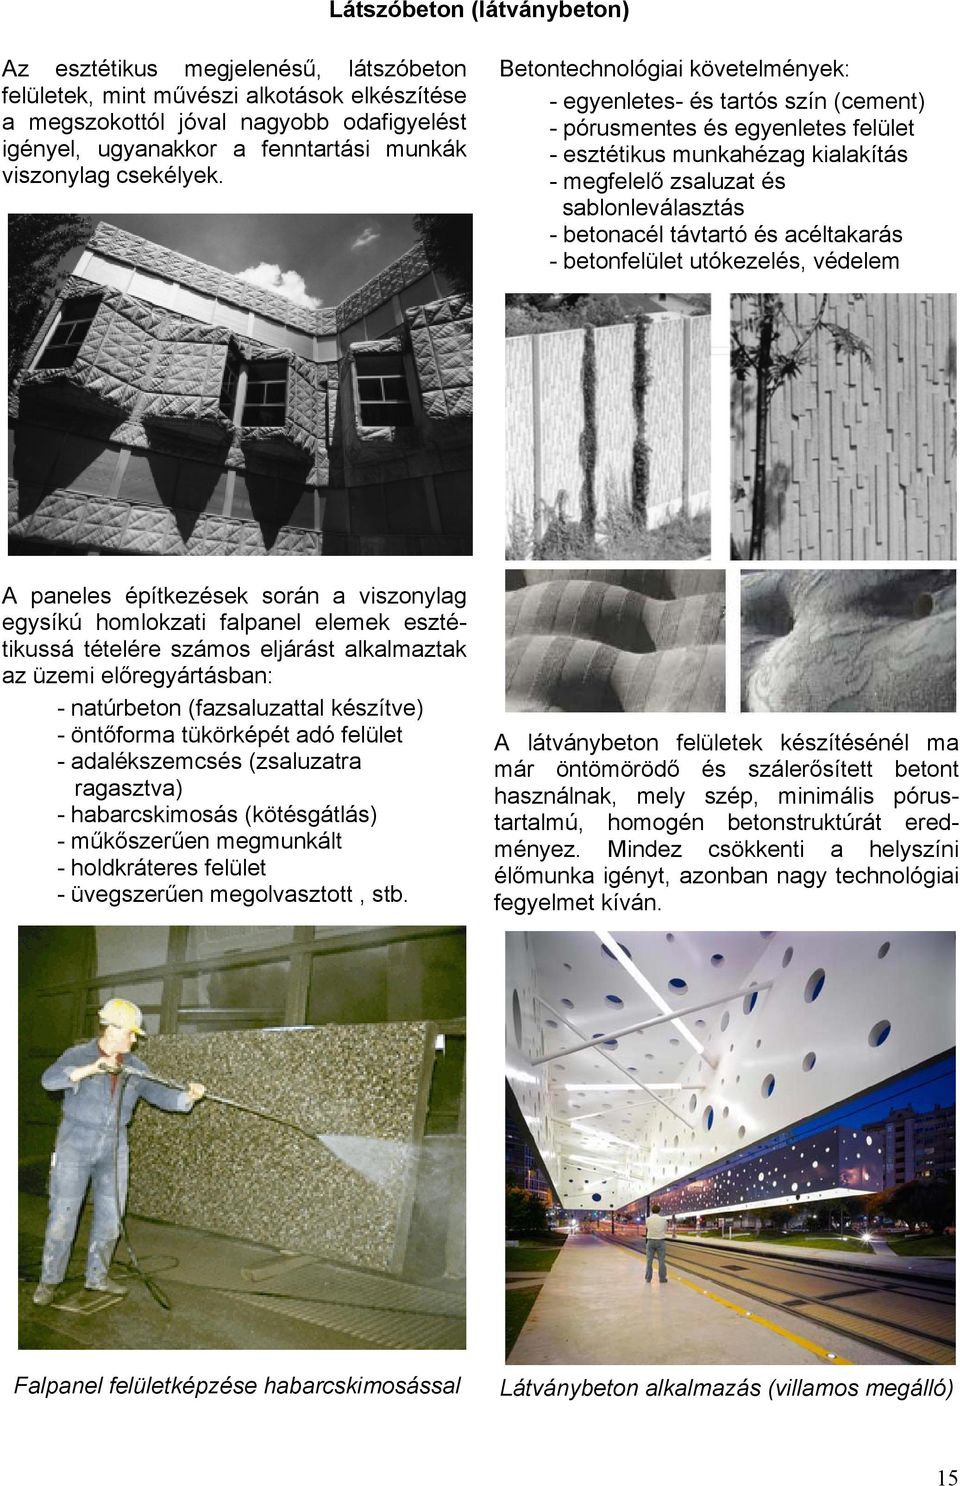 Betontechnológiai követelmények: - egyenletes- és tartós szín (cement) - pórusmentes és egyenletes felület - esztétikus munkahézag kialakítás - megfelelő zsaluzat és sablonleválasztás - betonacél